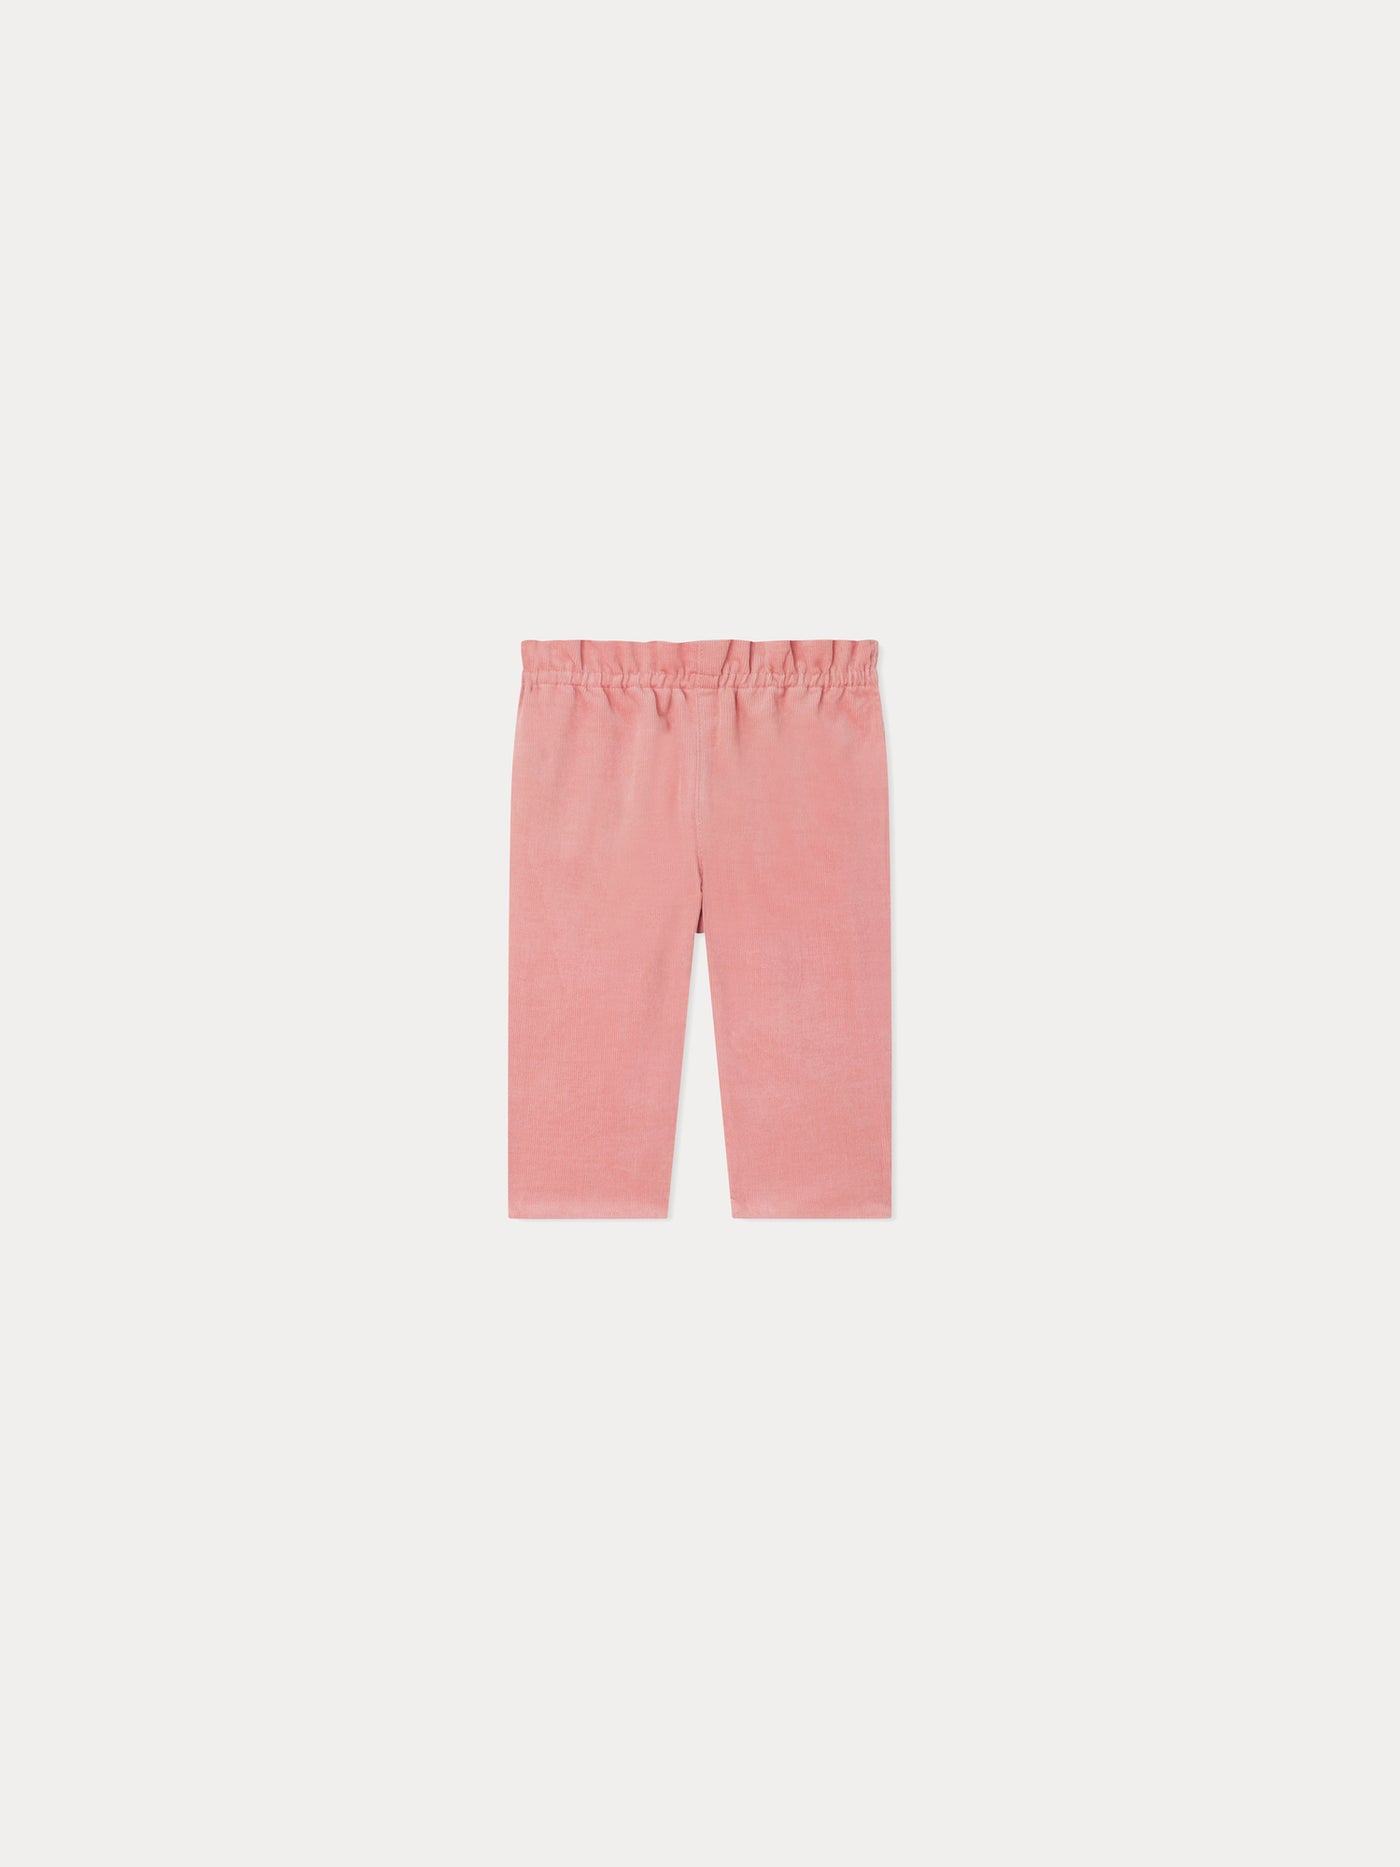 Tweety Pants faded pink